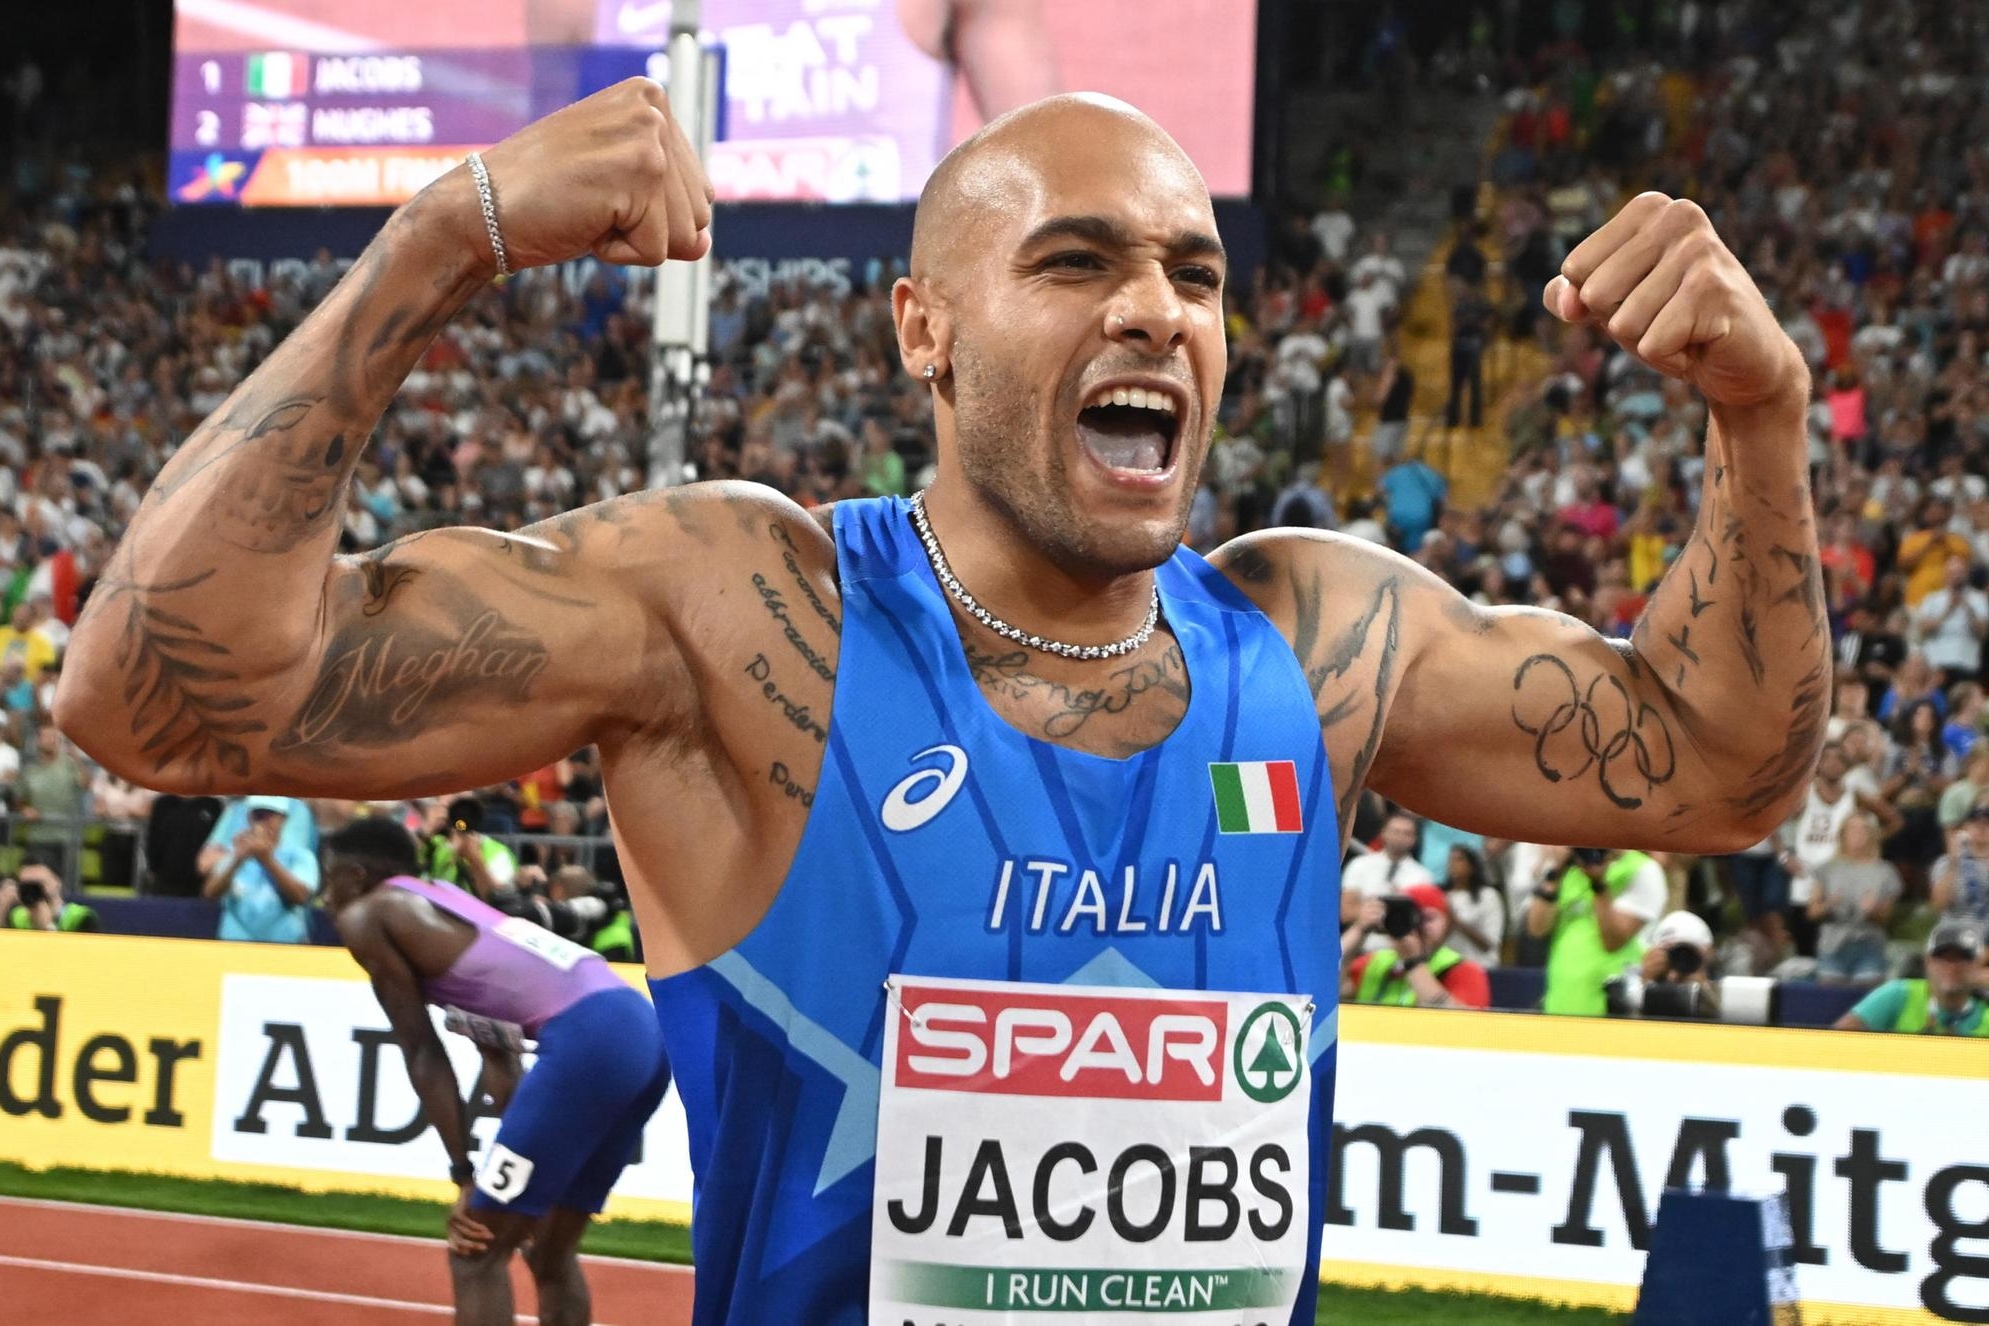 Jacobs vince l’oro nei 100 metri ed entra nella storia: “Medaglia che dà fiducia”